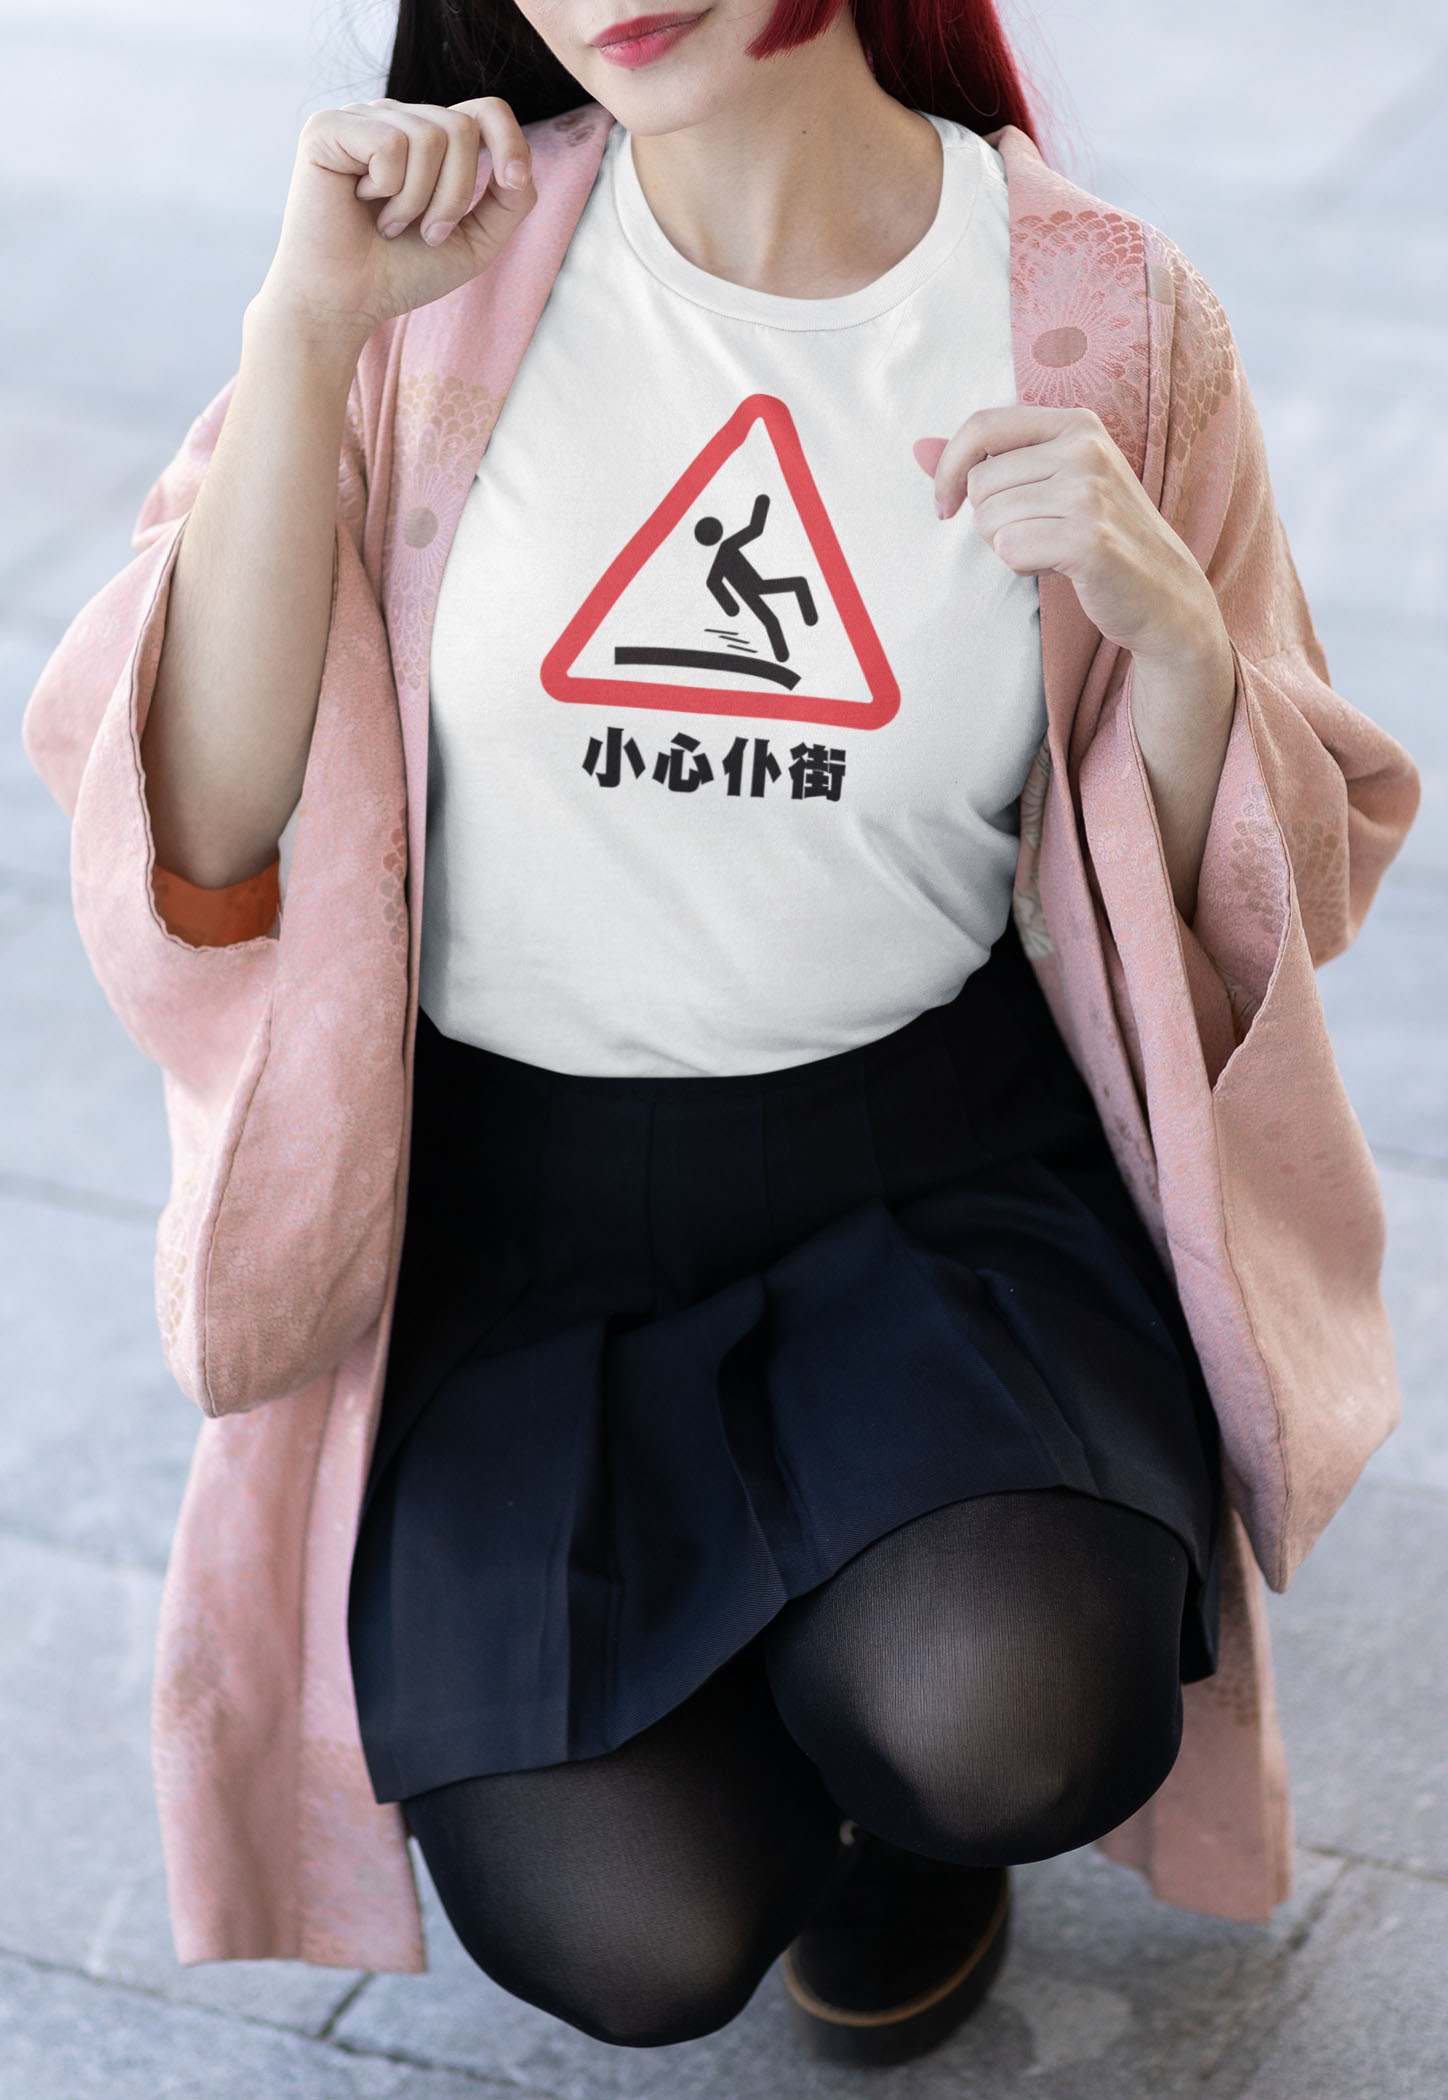 小心仆街 T-shirt Design